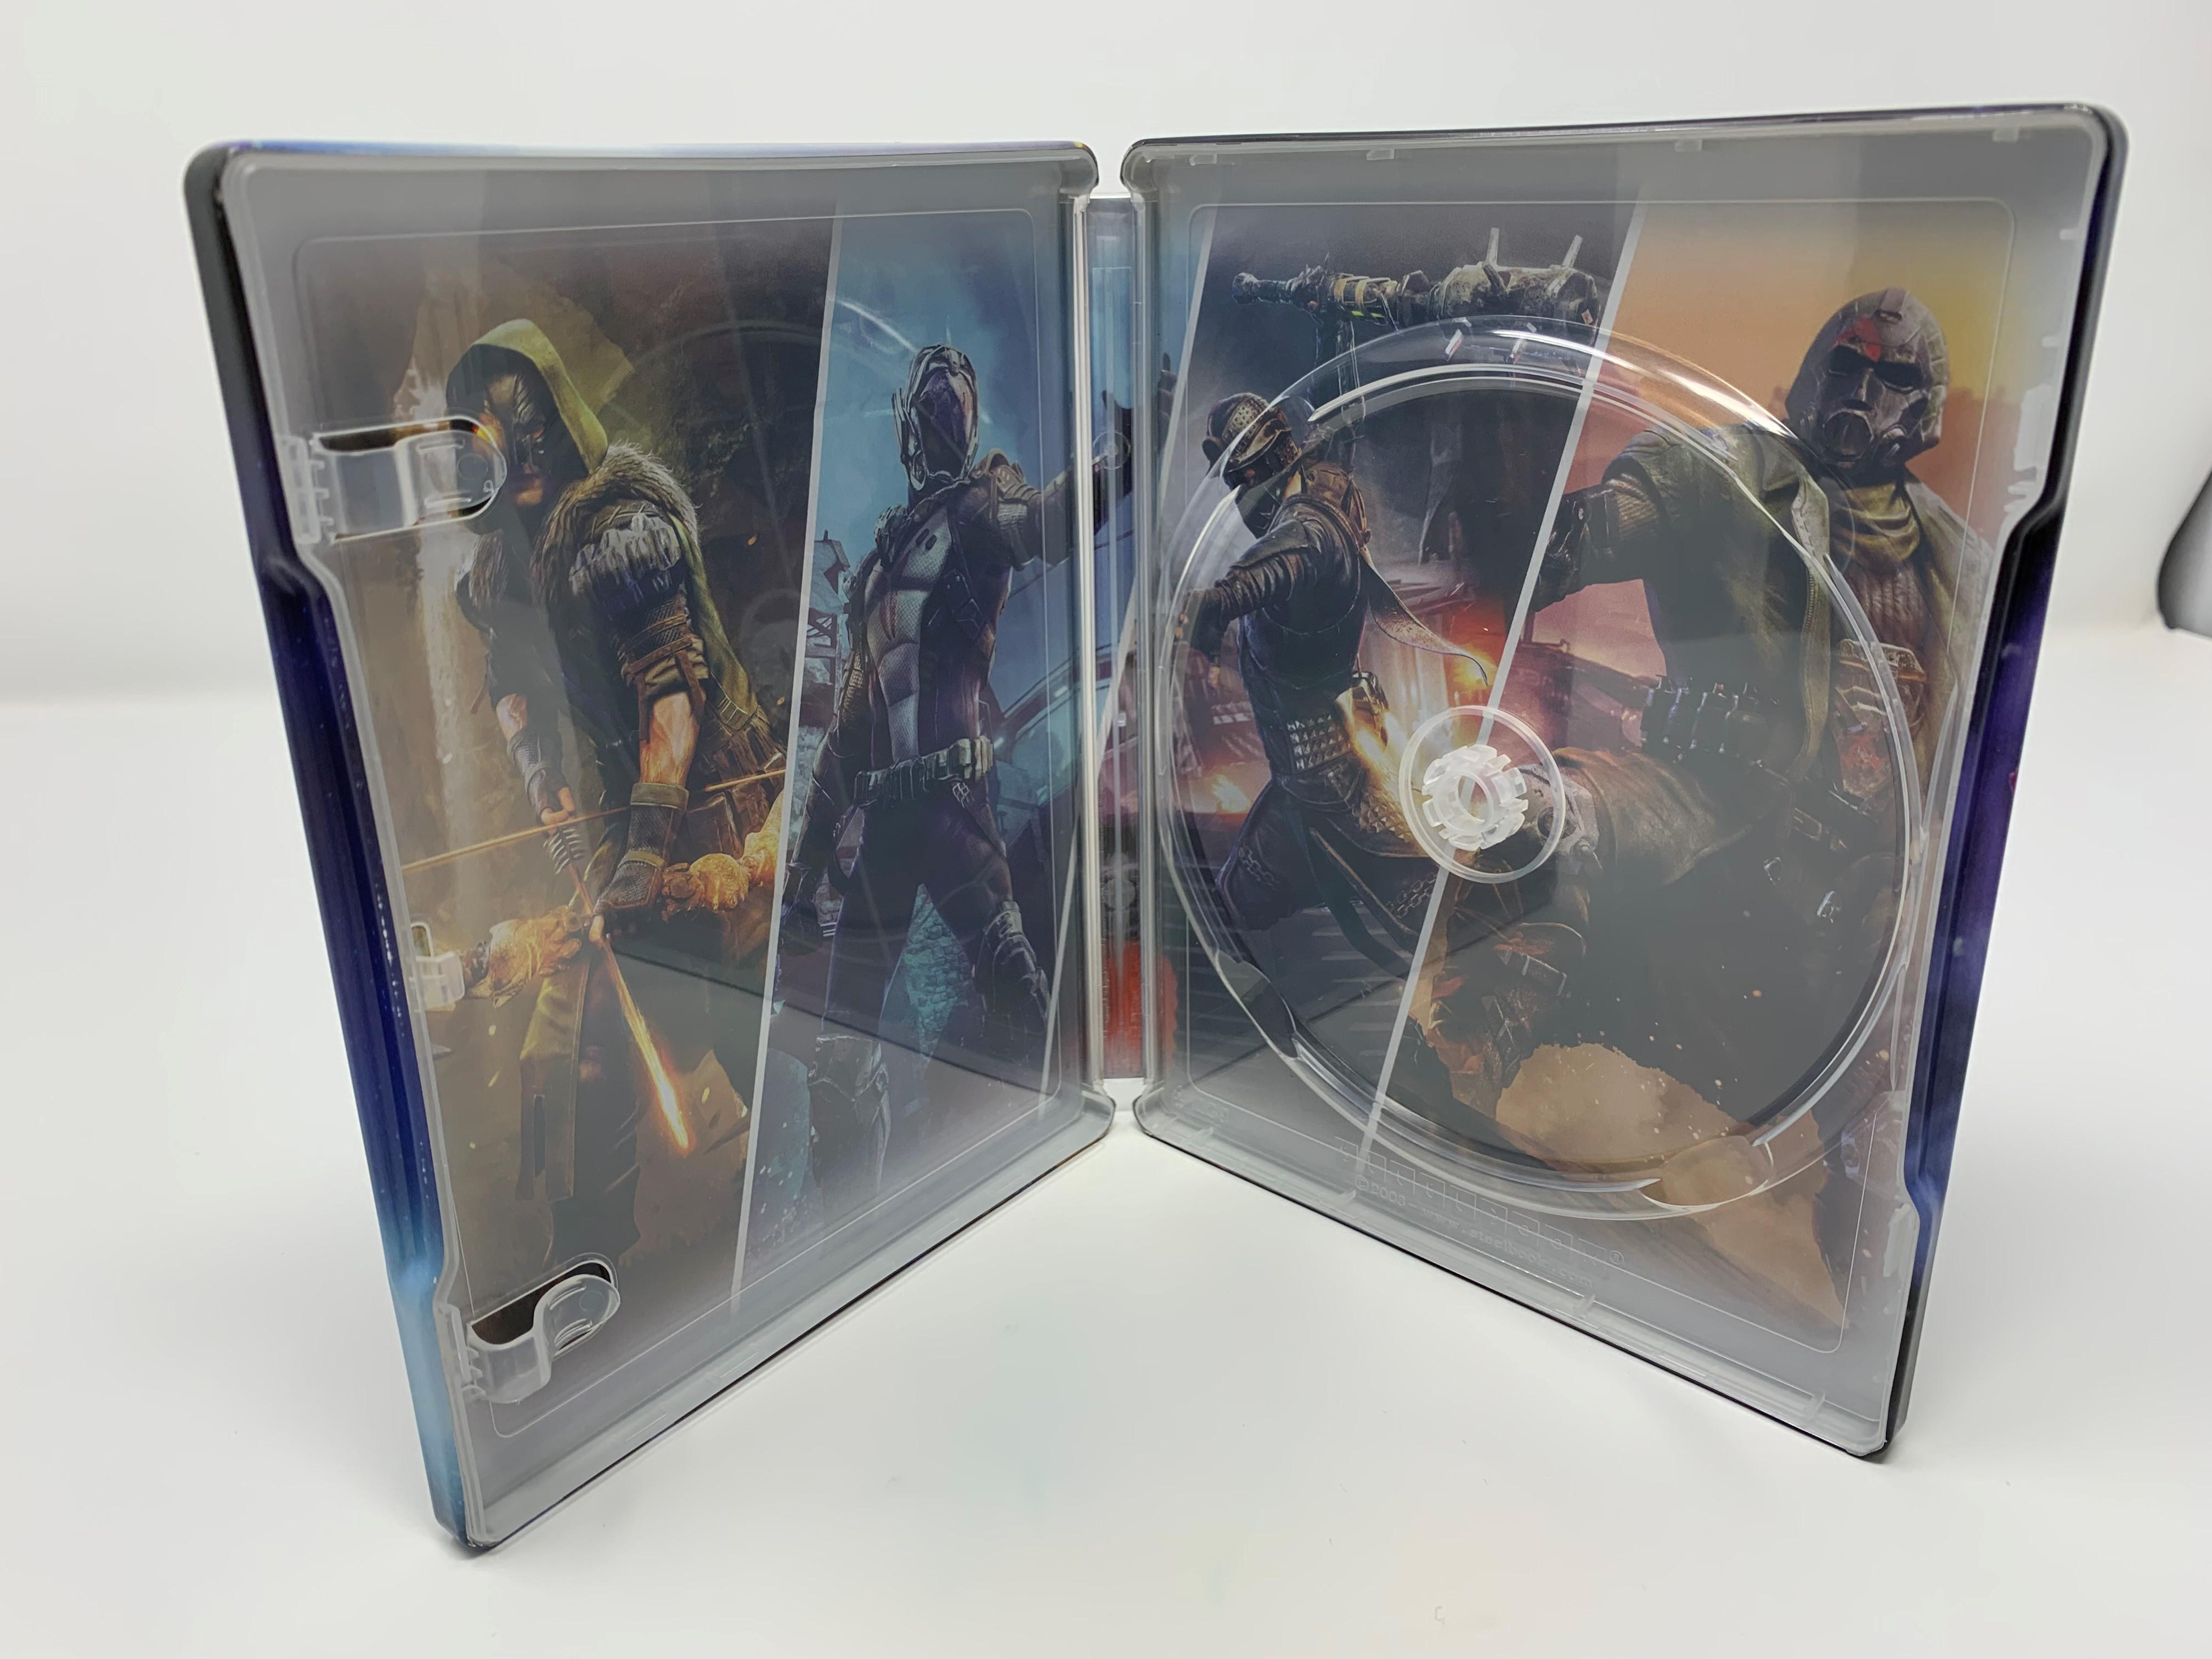 ELEX II - Day 1 [PlayStation - Steelbook Edition 5